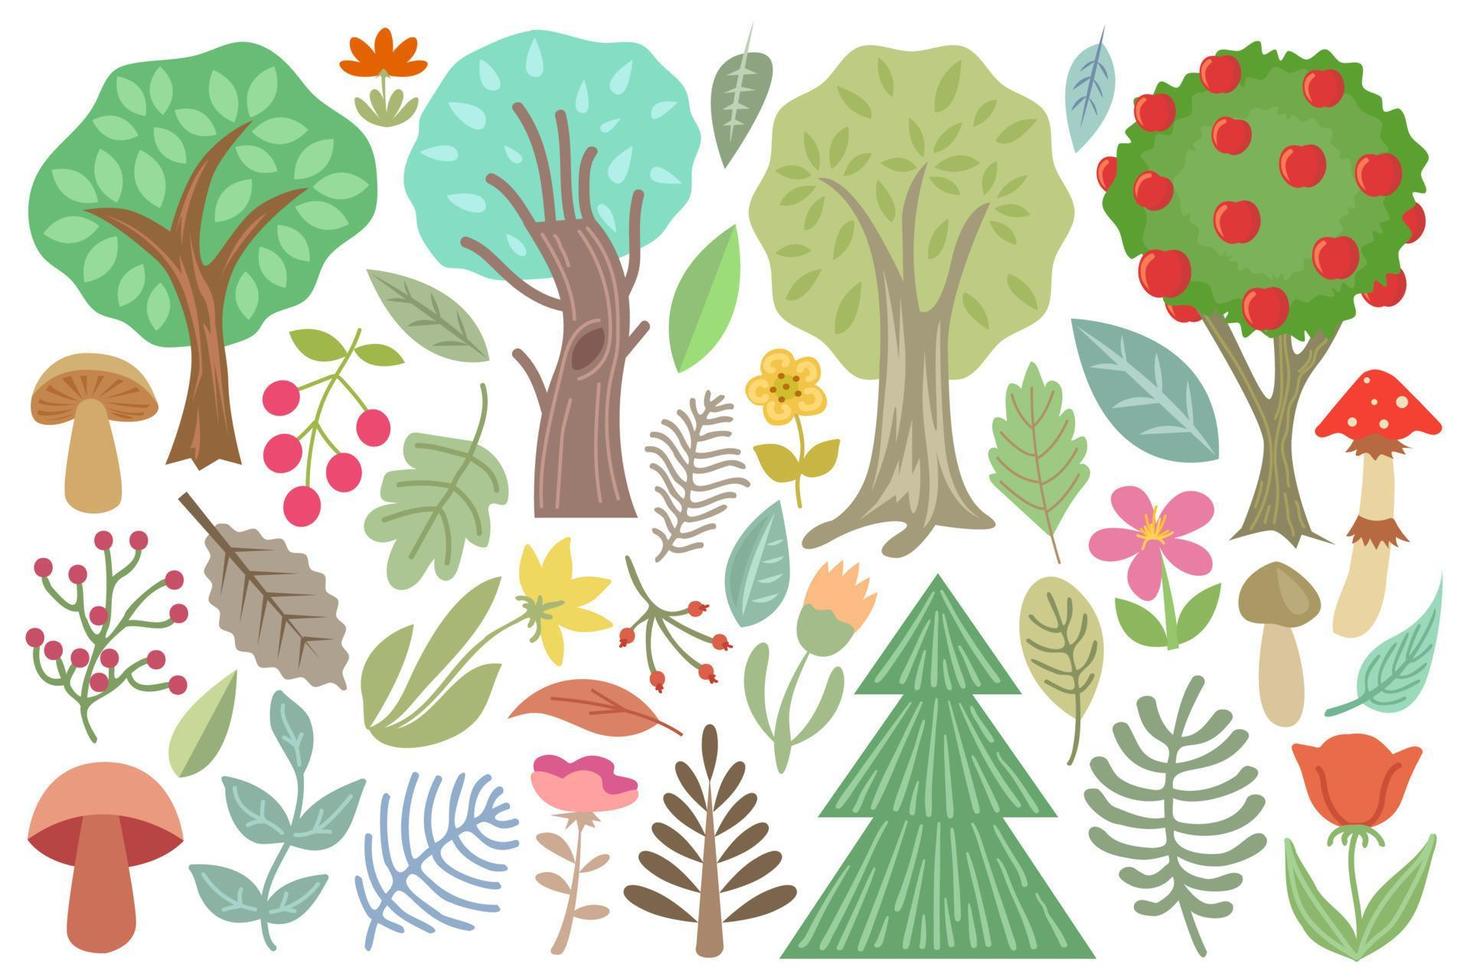 bos bomen en planten collectie, geïsoleerd op een witte achtergrond, botanische set met paddestoelen, bloemen, bessen, bladeren, bomen, takken vector illustratie.